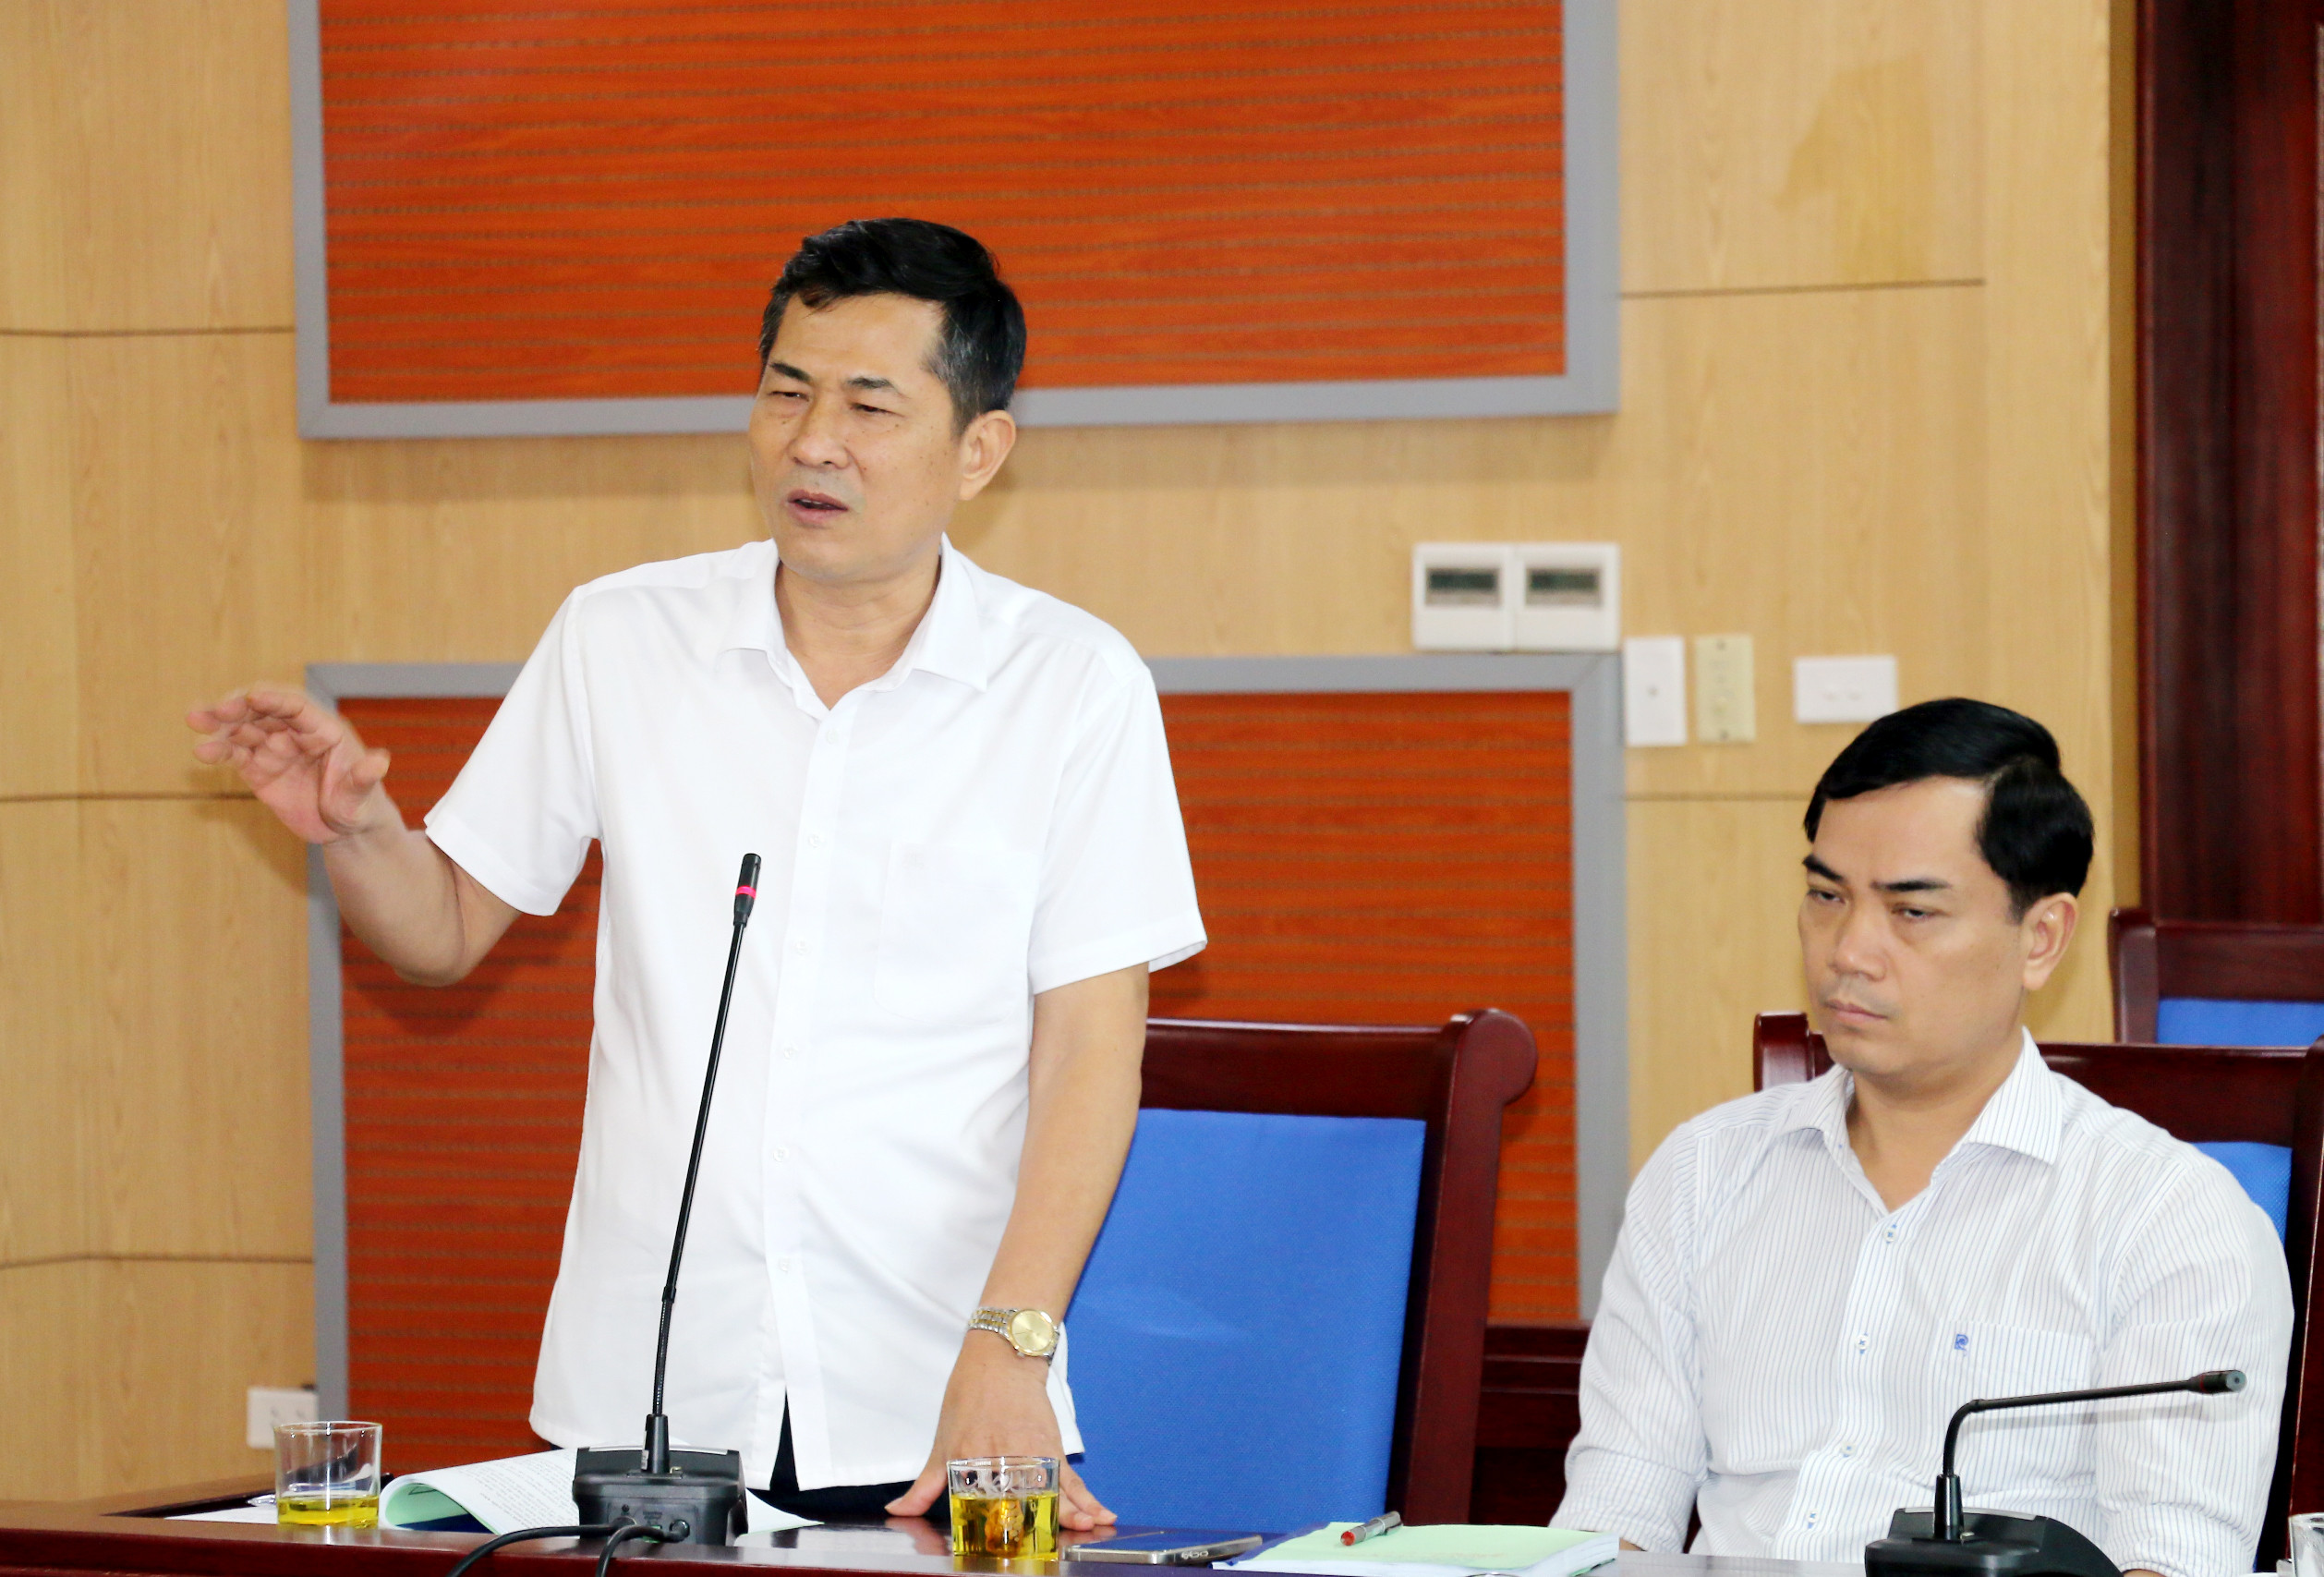 bna_Giám đốc Sở Giáo dục và Đào tạo Thái Văn Thành phát biểu tại cuộc họp. Ảnh - Mỹ Hà.jpg